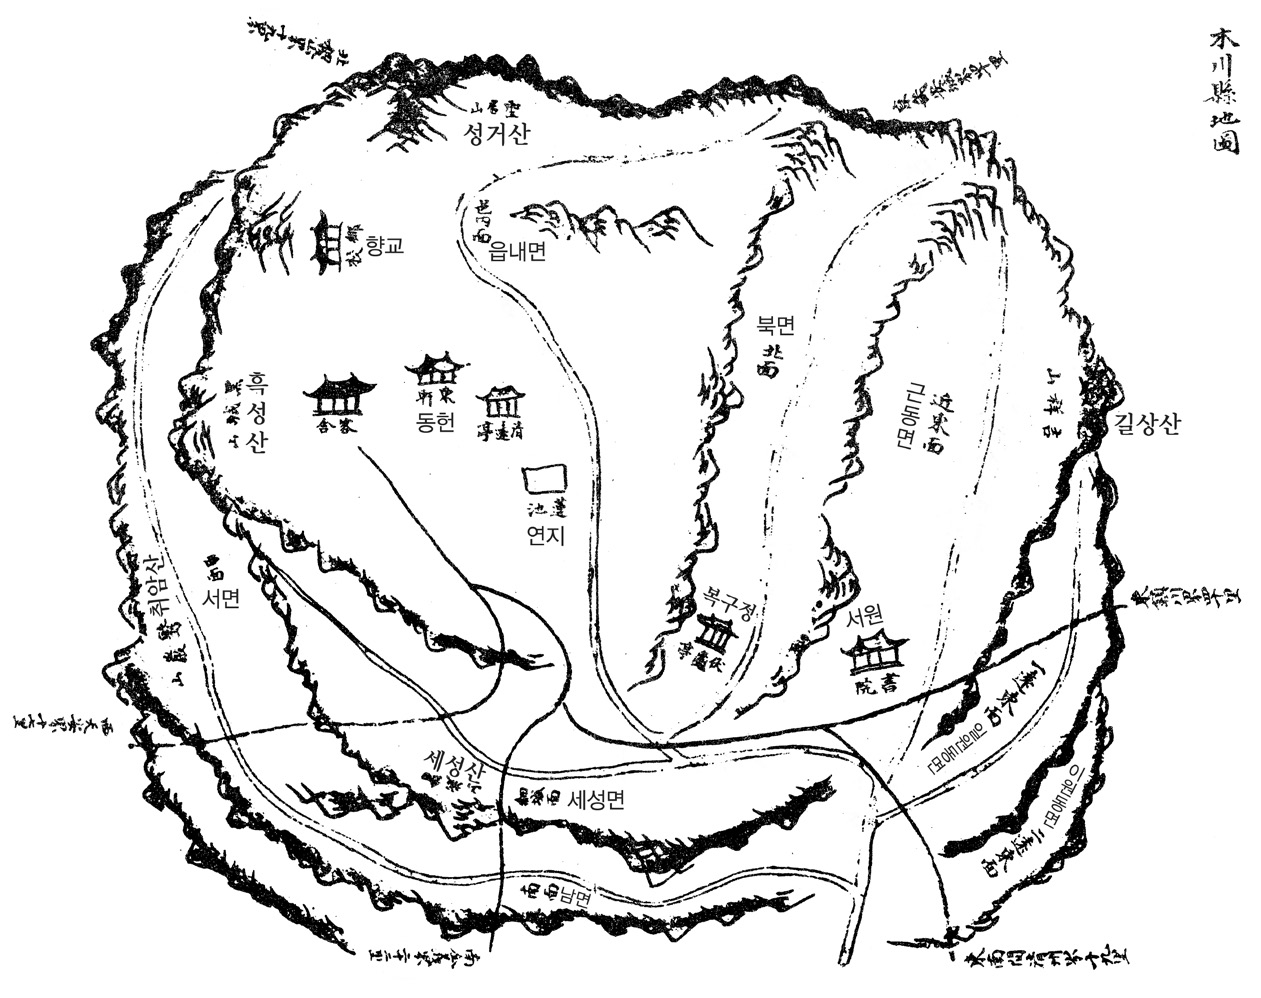 『여지도서(輿地圖書)』에 있는 목천현 지도, 1757~65.